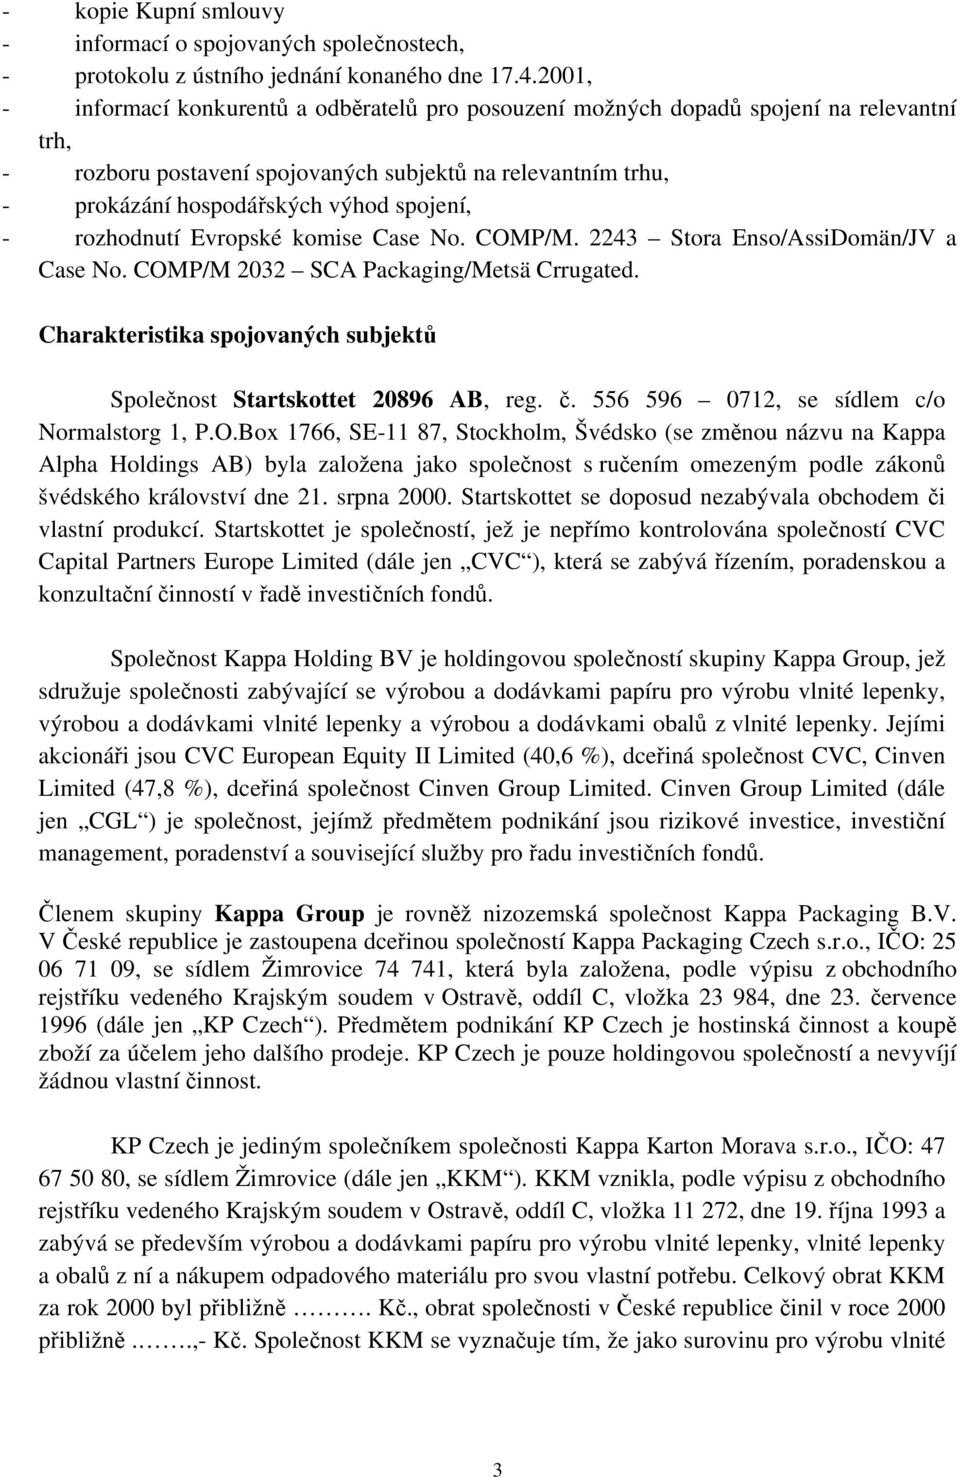 spojení, - rozhodnutí Evropské komise Case No. COMP/M. 2243 Stora Enso/AssiDomän/JV a Case No. COMP/M 2032 SCA Packaging/Metsä Crrugated.